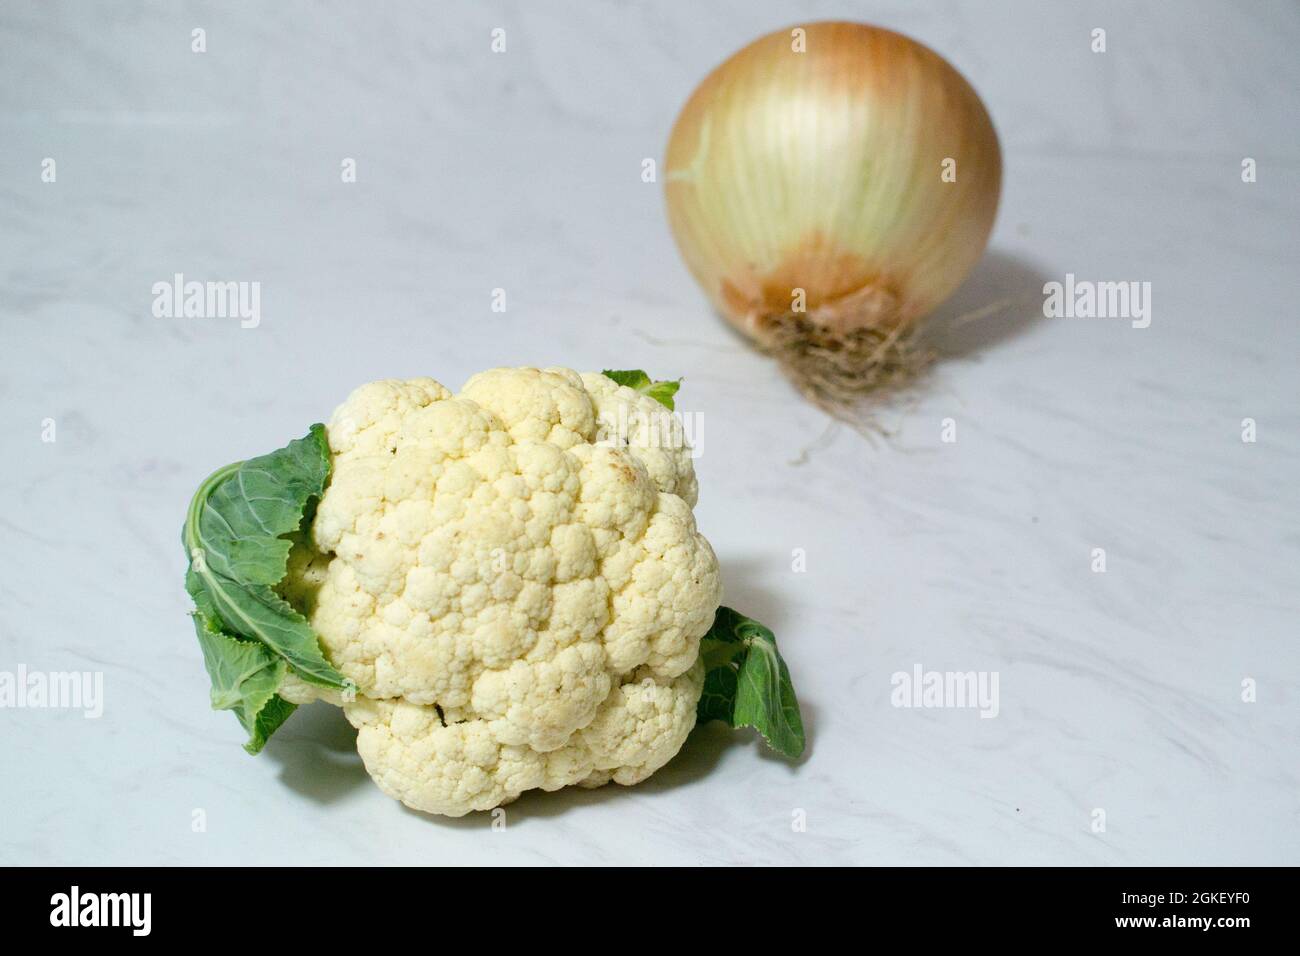 Un oignon géant, et/ou un minuscule chou-fleur sur une surface en marbre - un ou les deux légumes sont exceptionnellement petits ou étonnamment grands. L'oignon est plus grand que le cauli. Banque D'Images